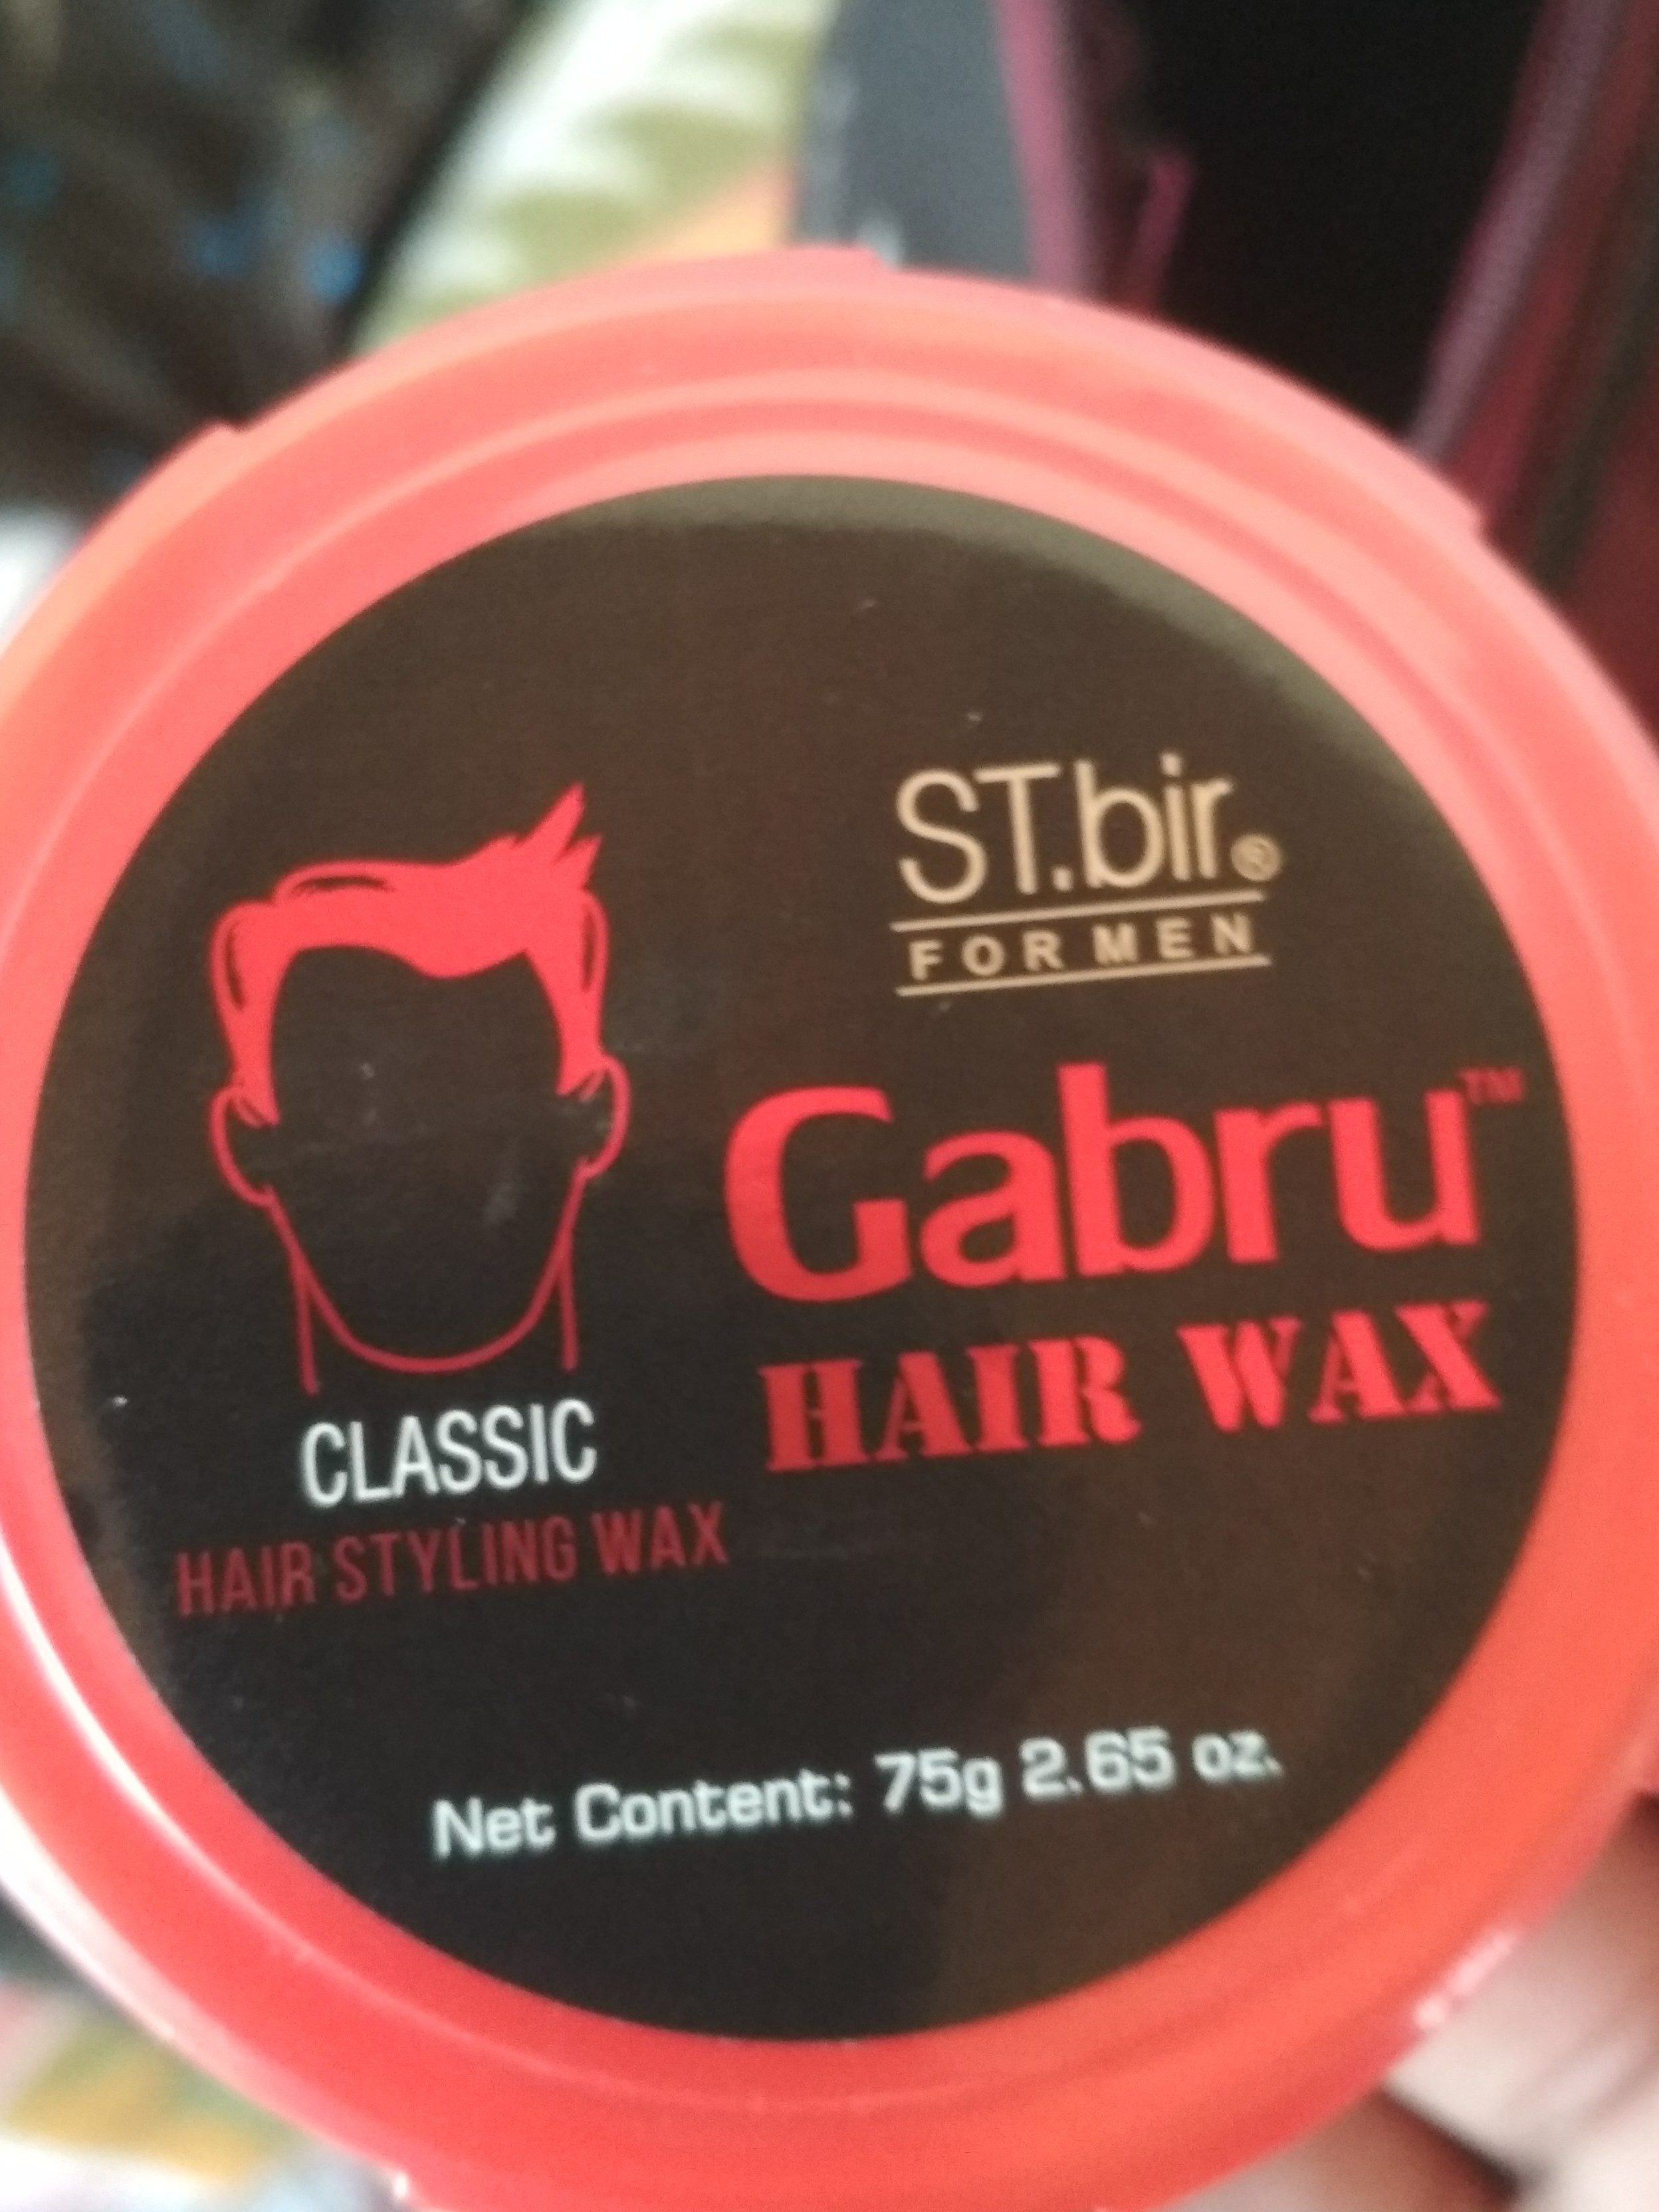 Gabru hair wax - Tuote - en